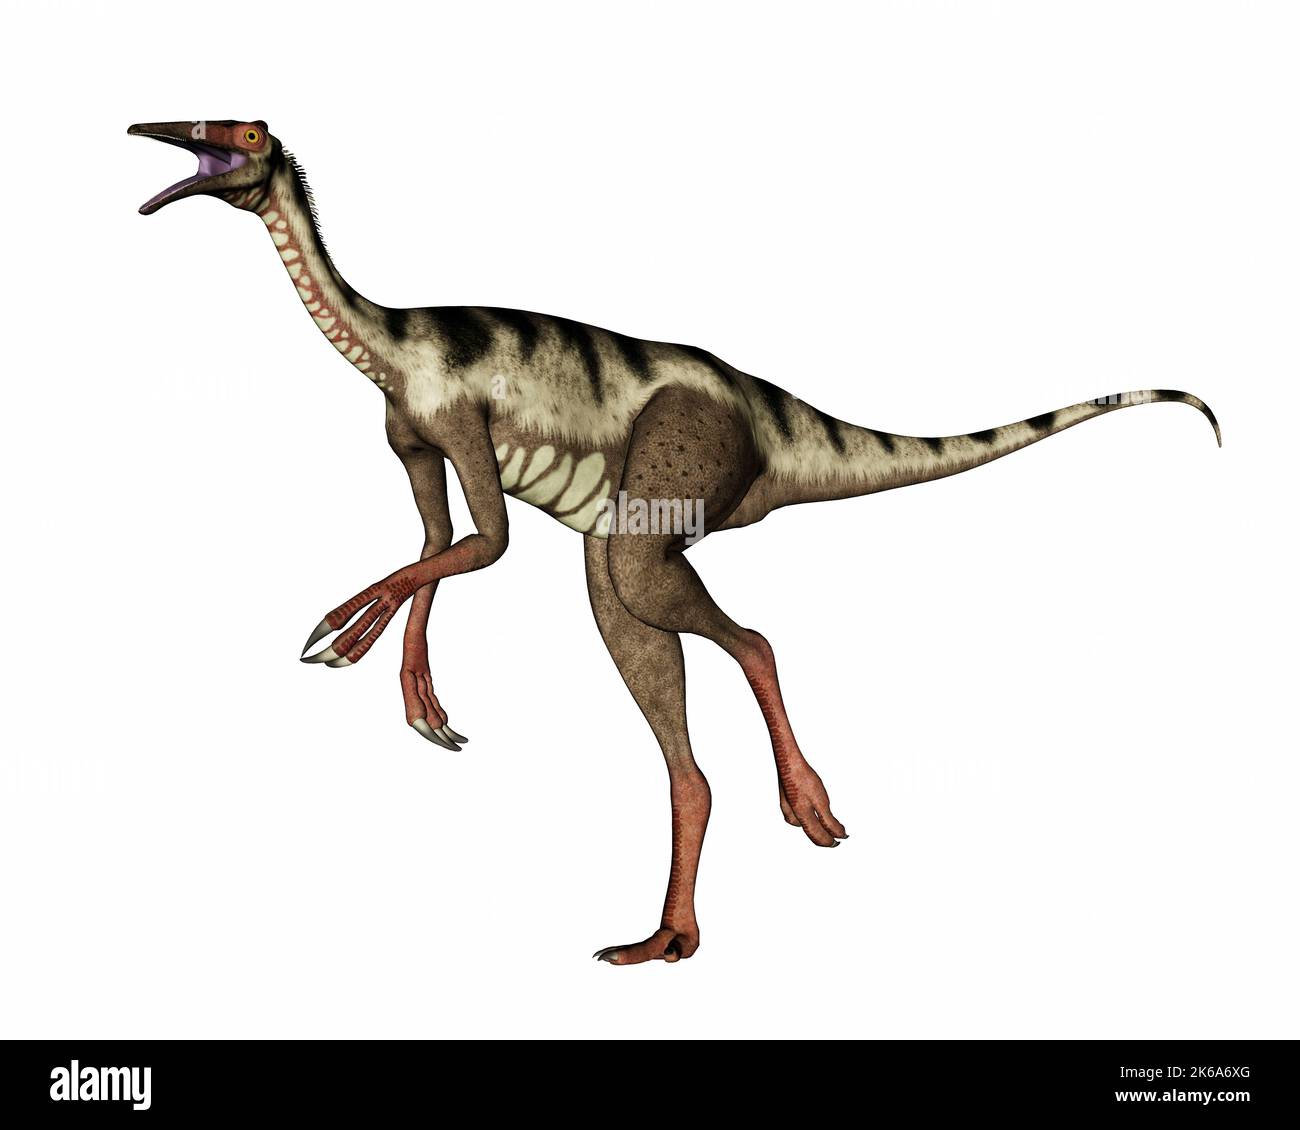 Pelecaniimus dinosaure marchant et rugissant, isolé sur fond blanc. Banque D'Images